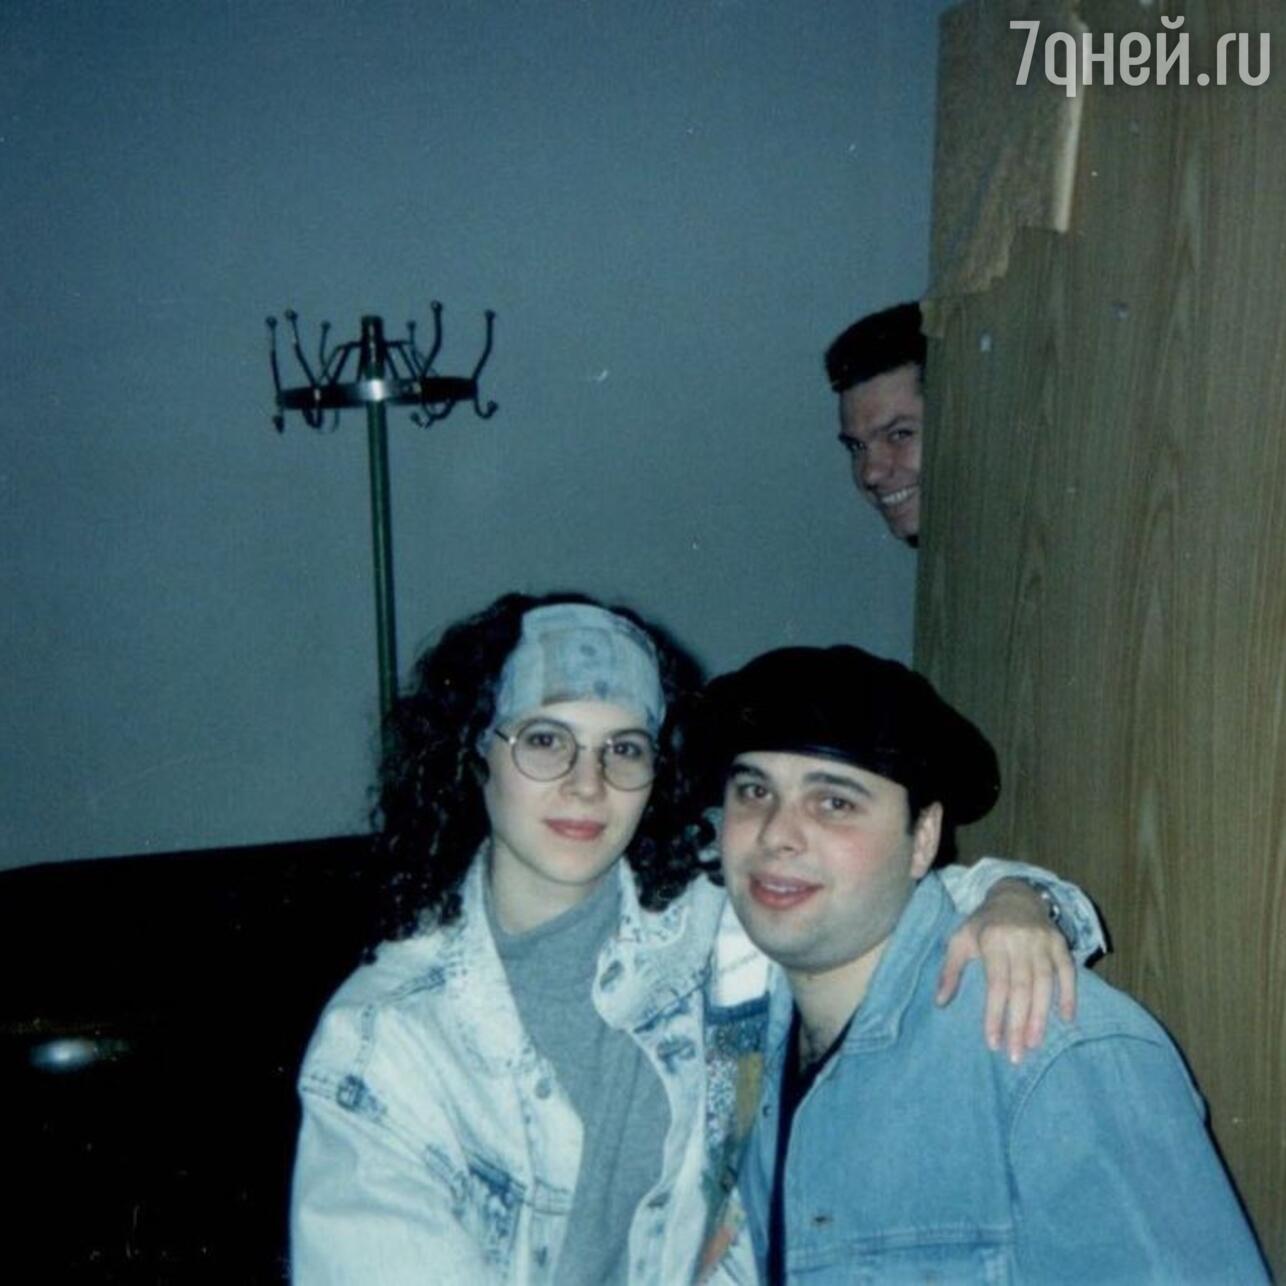 Максим Фадеев в молодости фото с женой